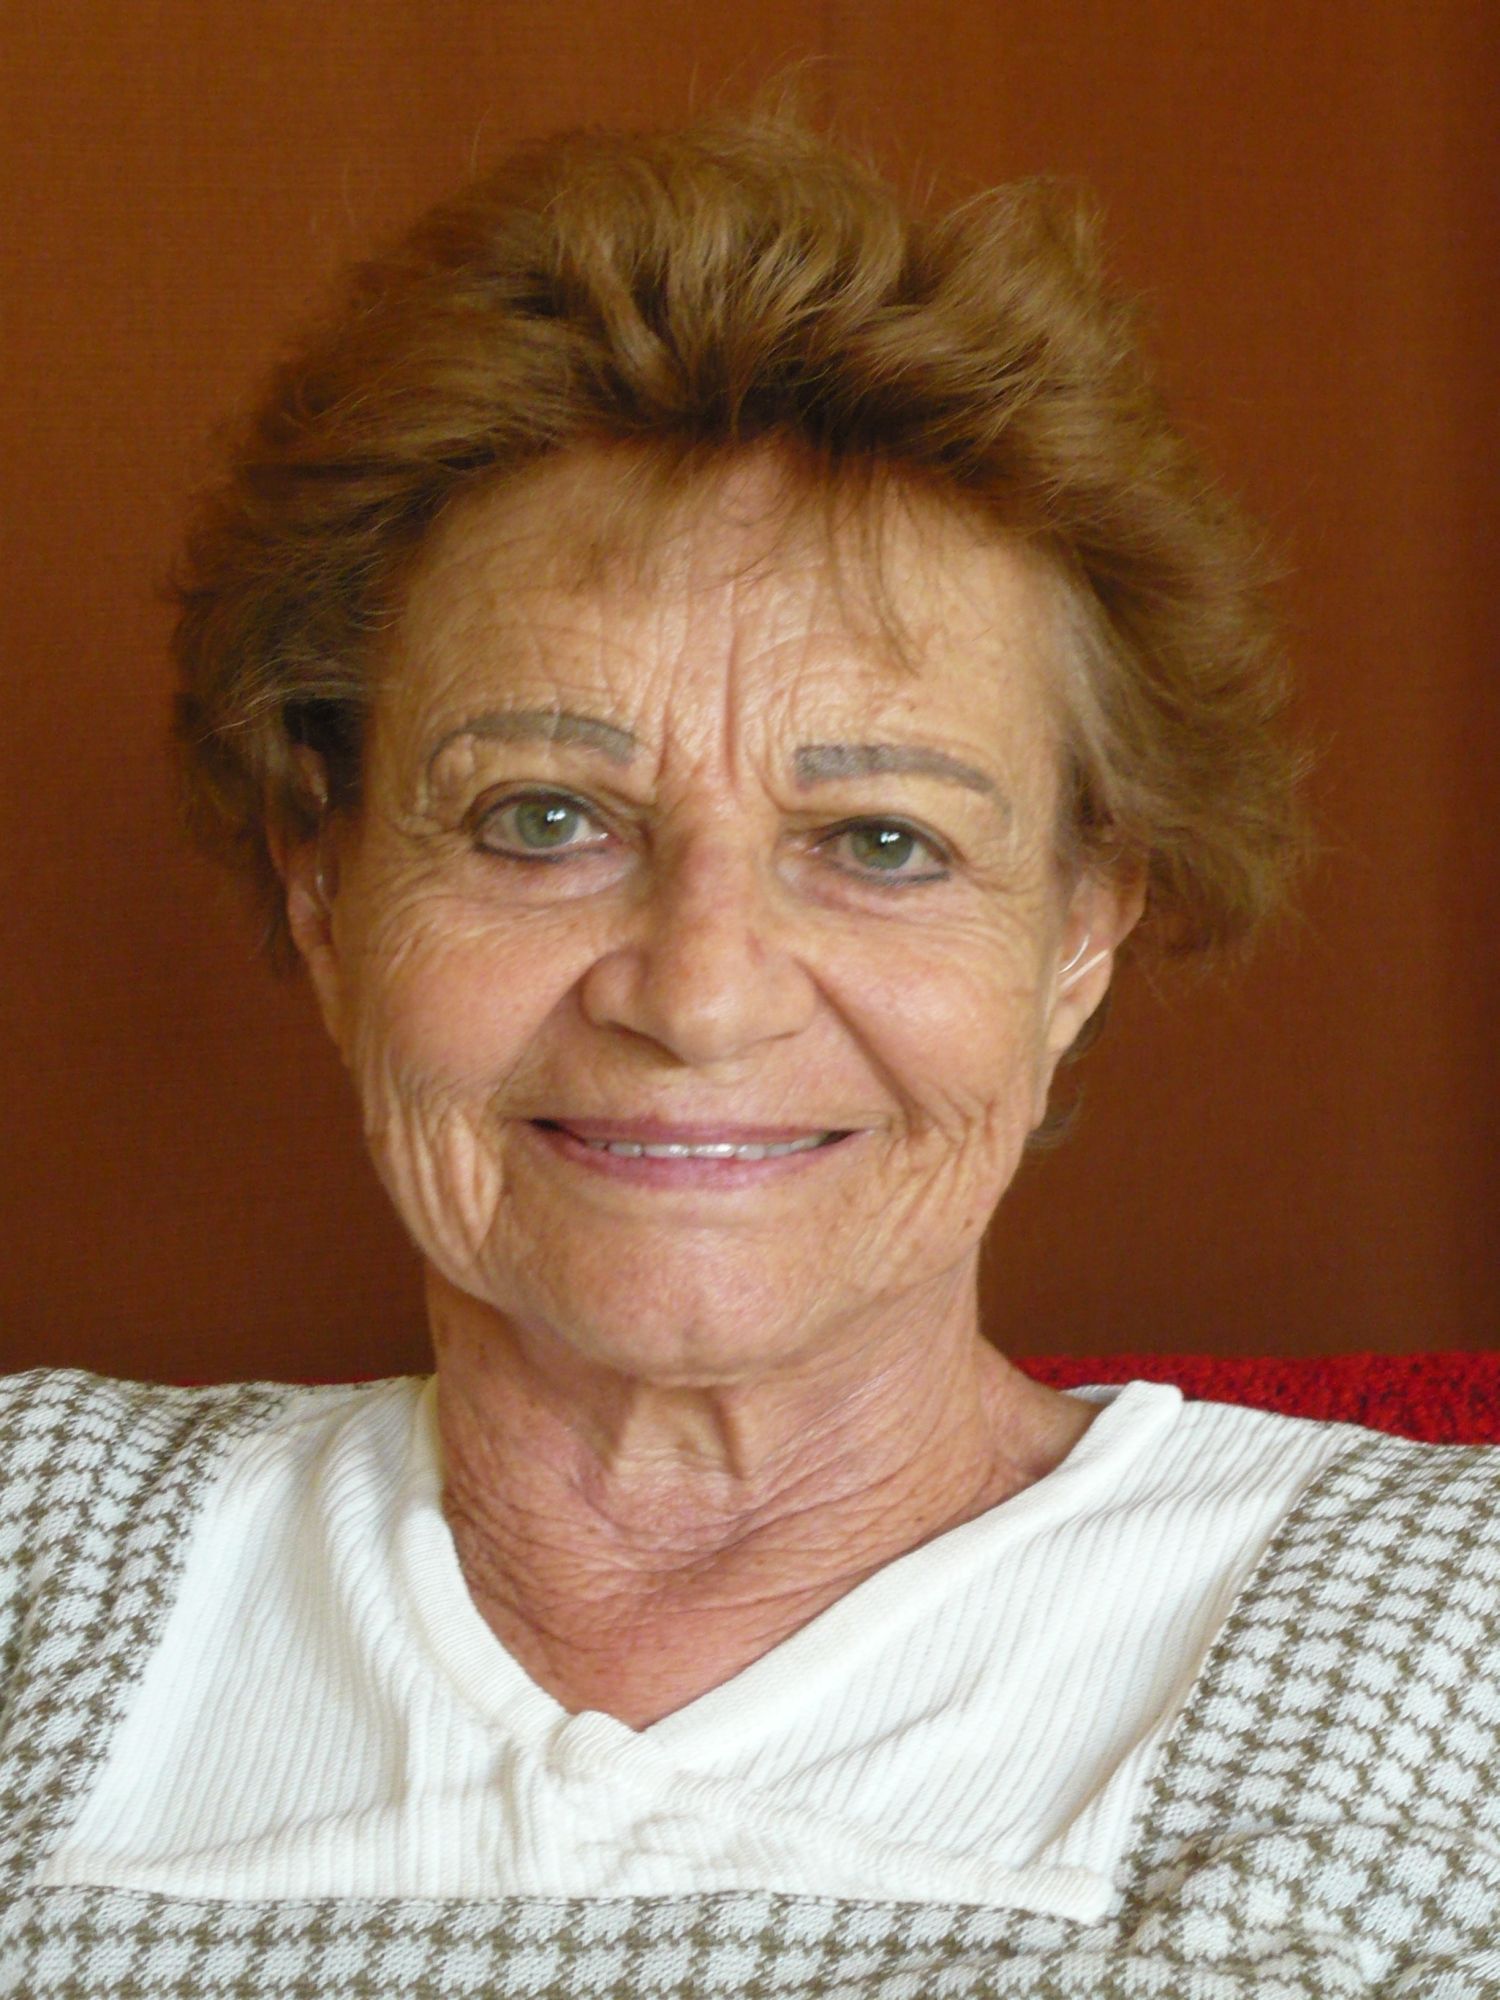 Ilsa Maier během natáčení rozhovoru v Praze v srpnu 2009